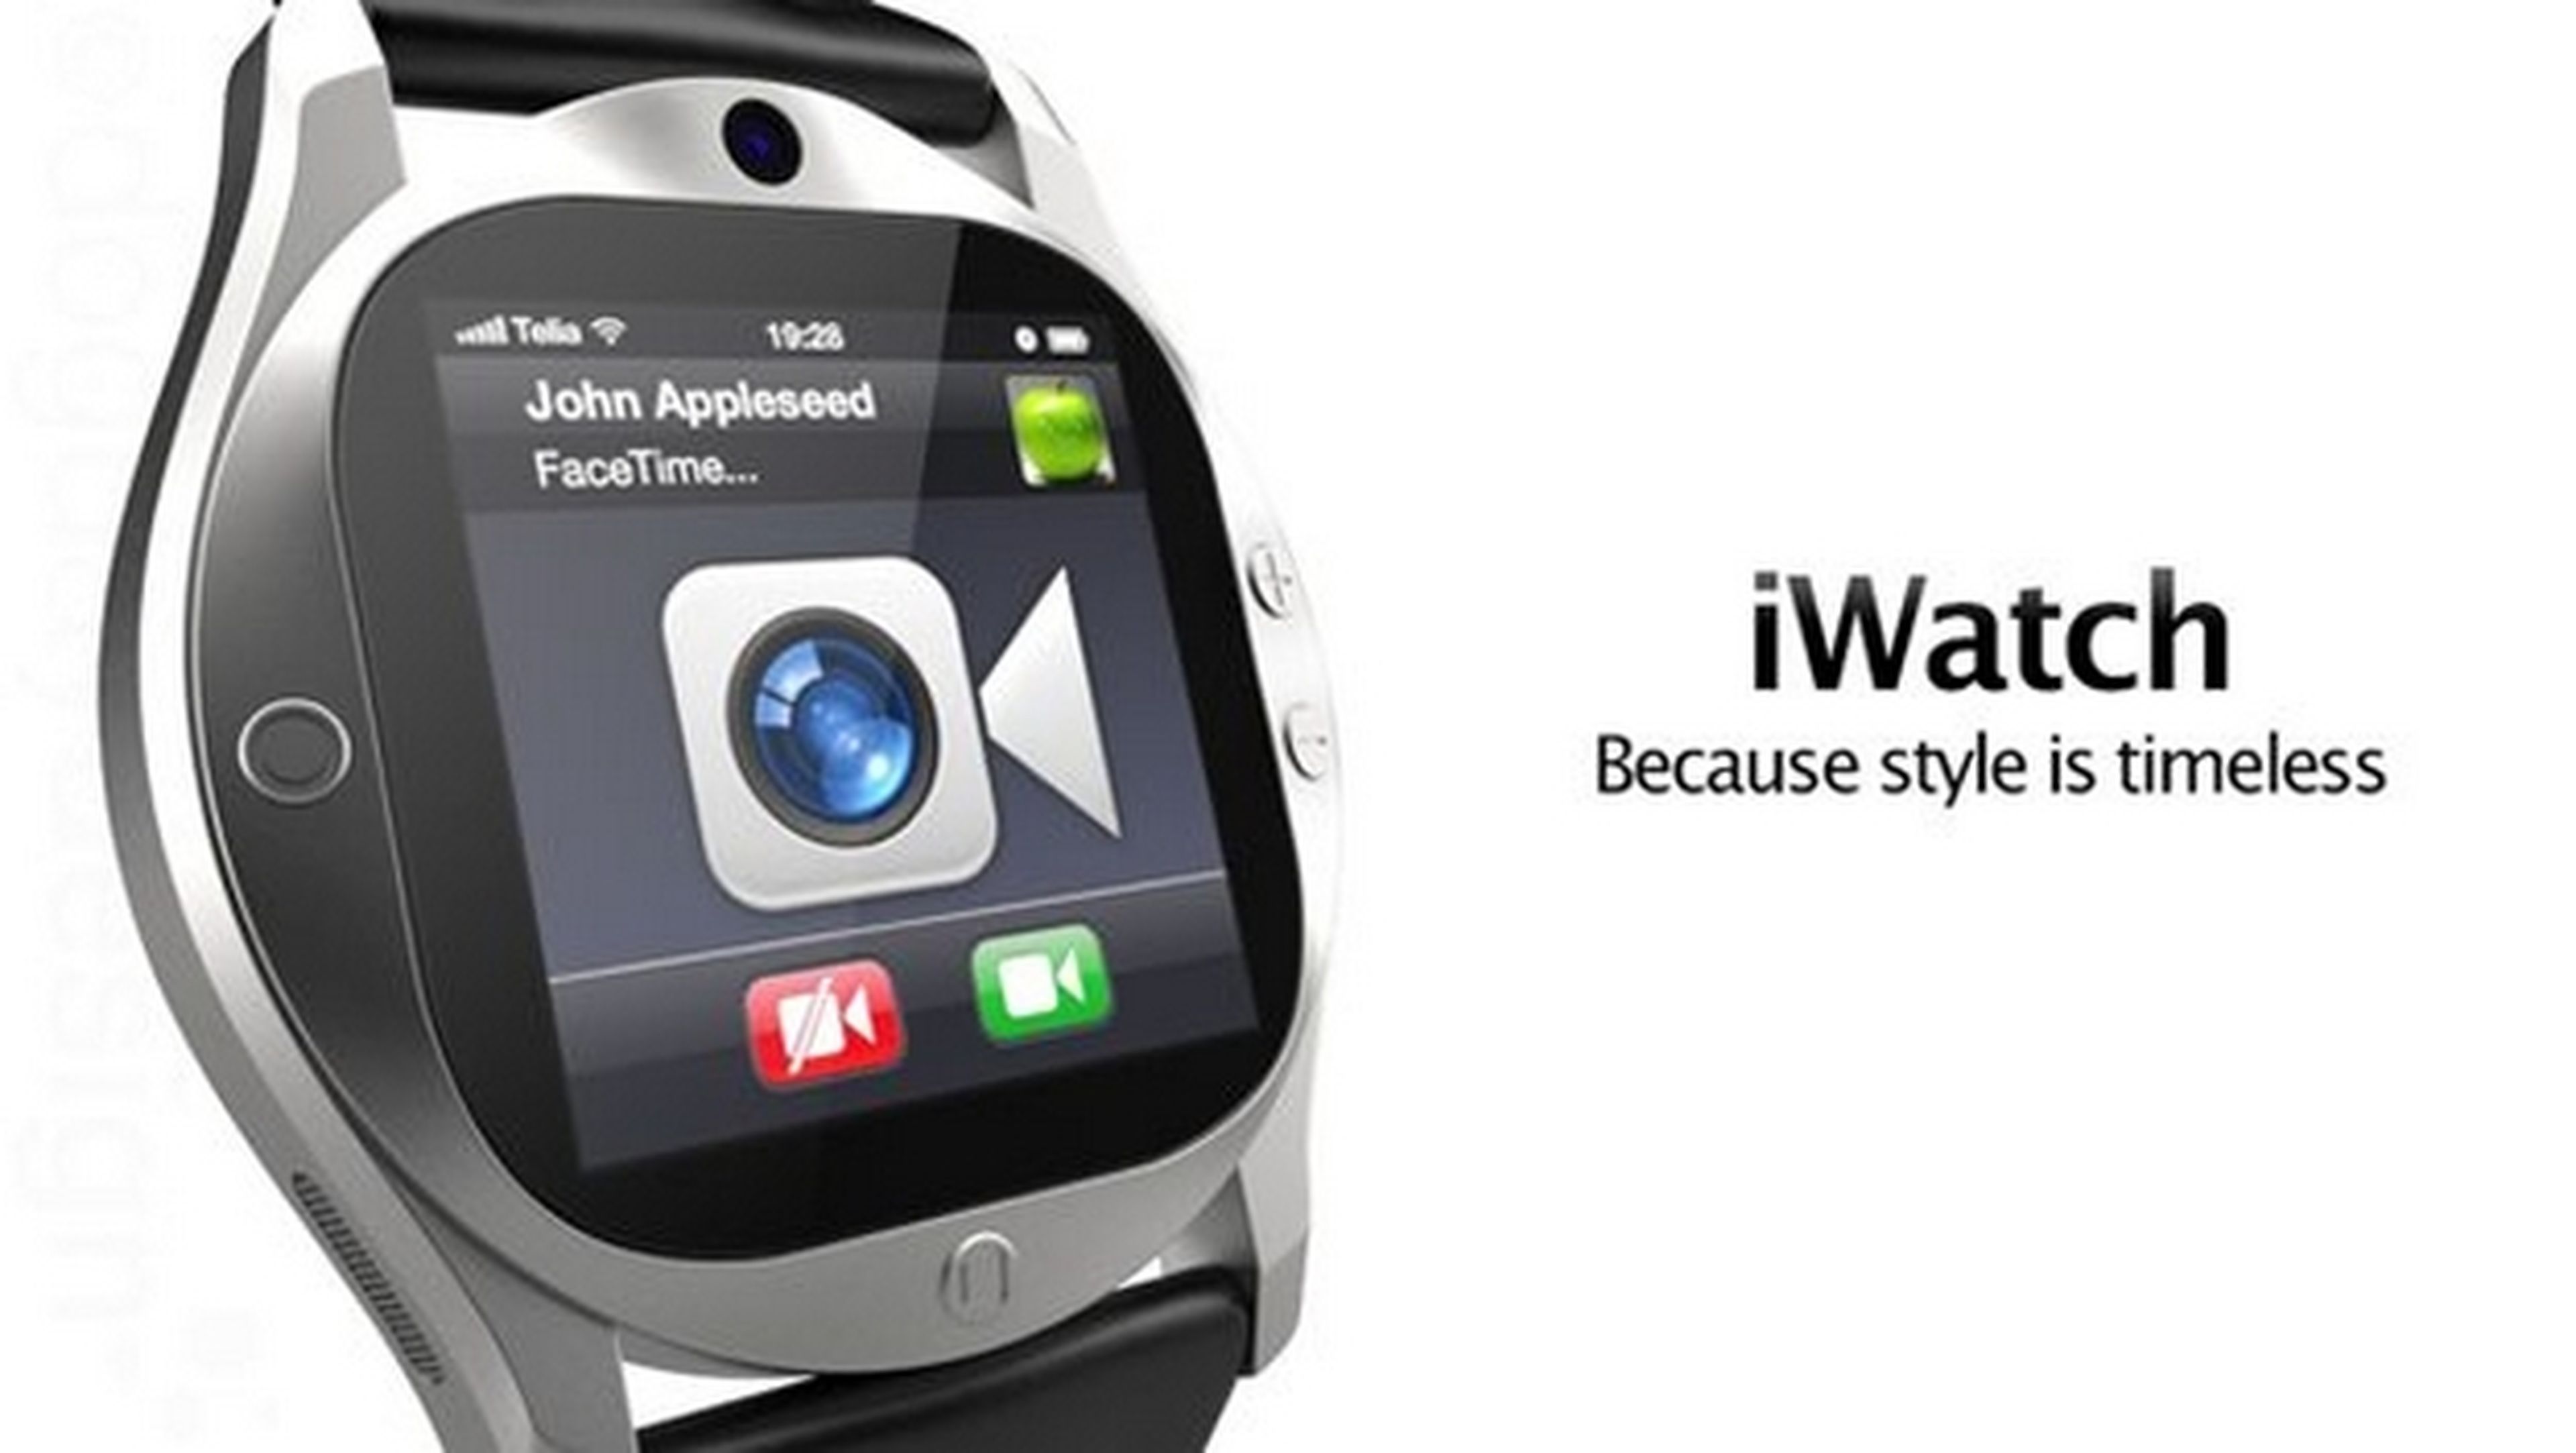 El reloj iWatch de Apple podría recargarse con energía solar, inducción magnética, o el movimiento